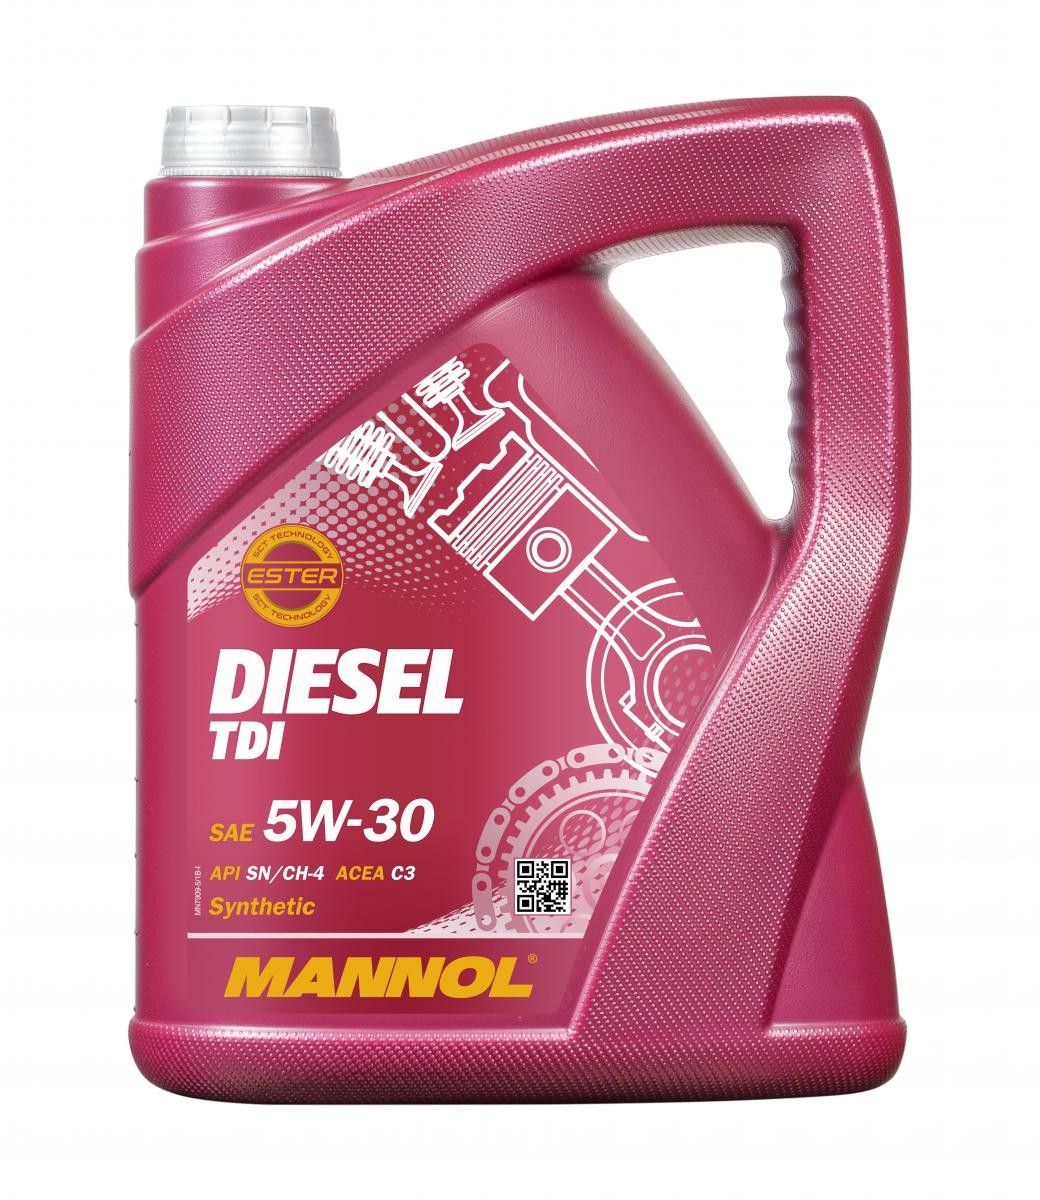 Engine oil MB 229.51 MANNOL diesel - MN7909-5 DIESEL TDI